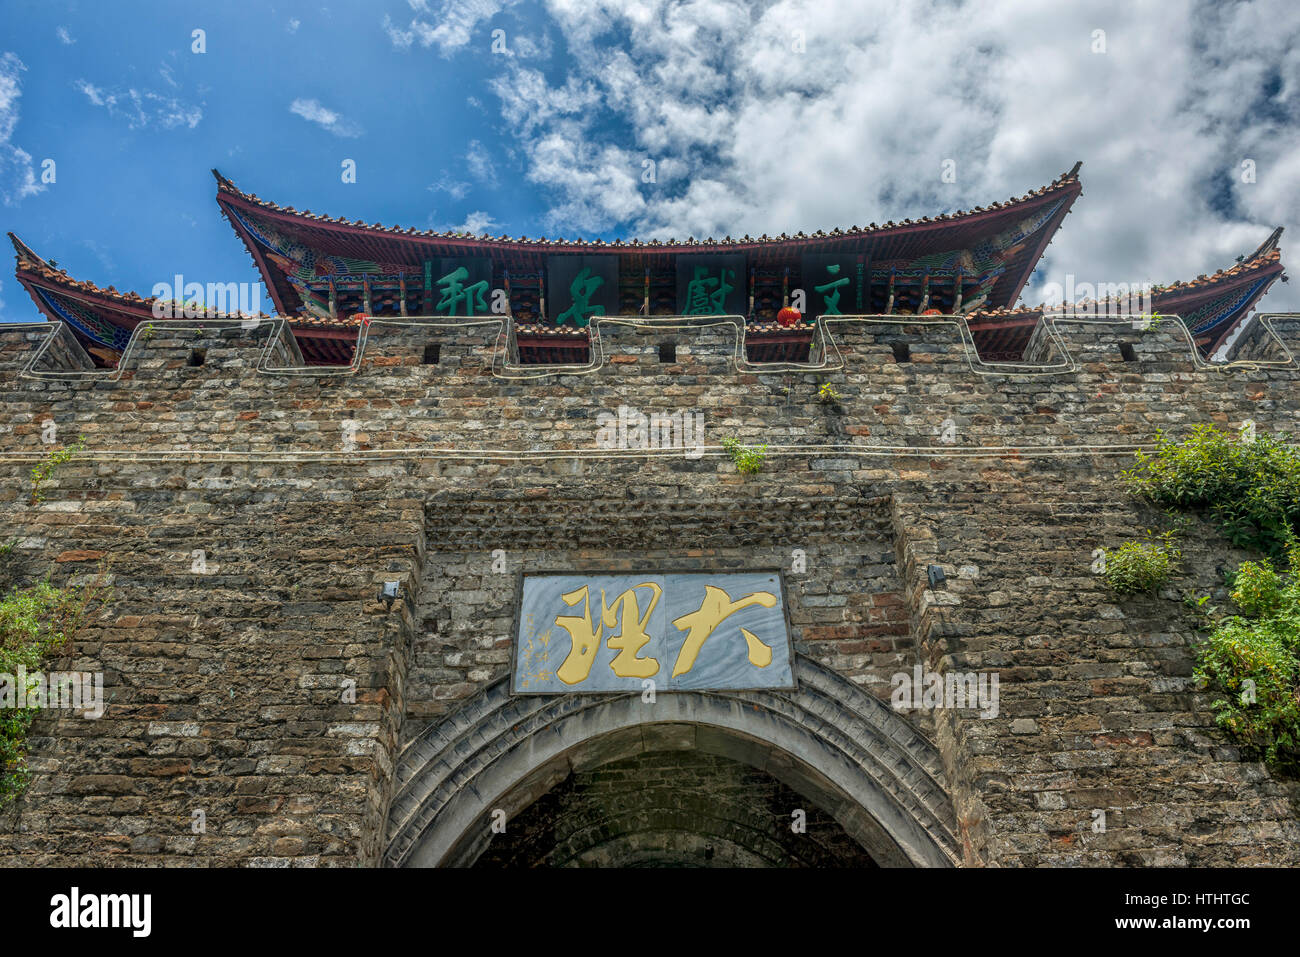 South gate to Dali ancient city, Yunnan, China Stock Photo